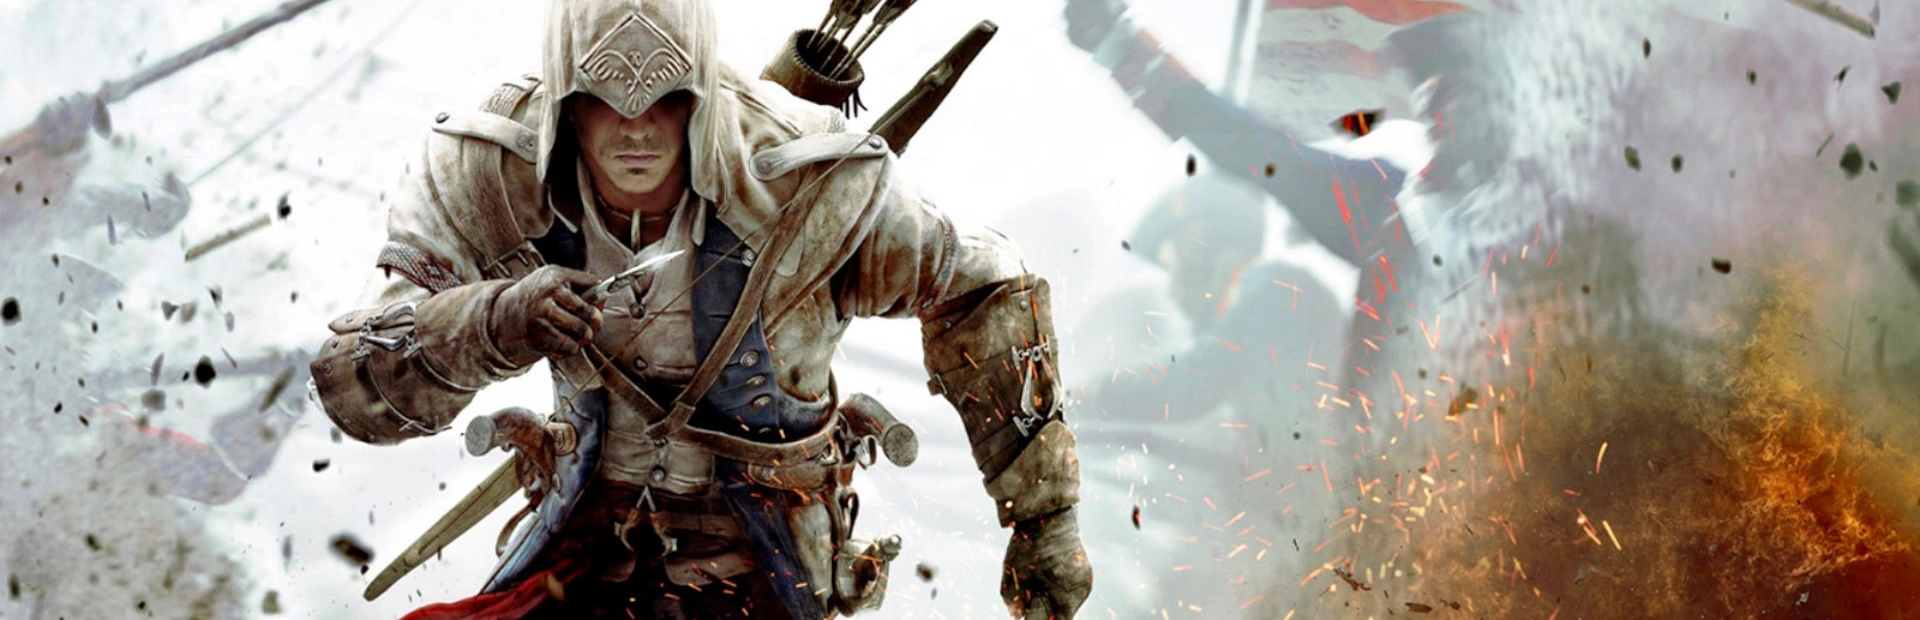 دانلود بازی Assassin's Creed 3 برای کامپیوتر کرک | گیمباتو